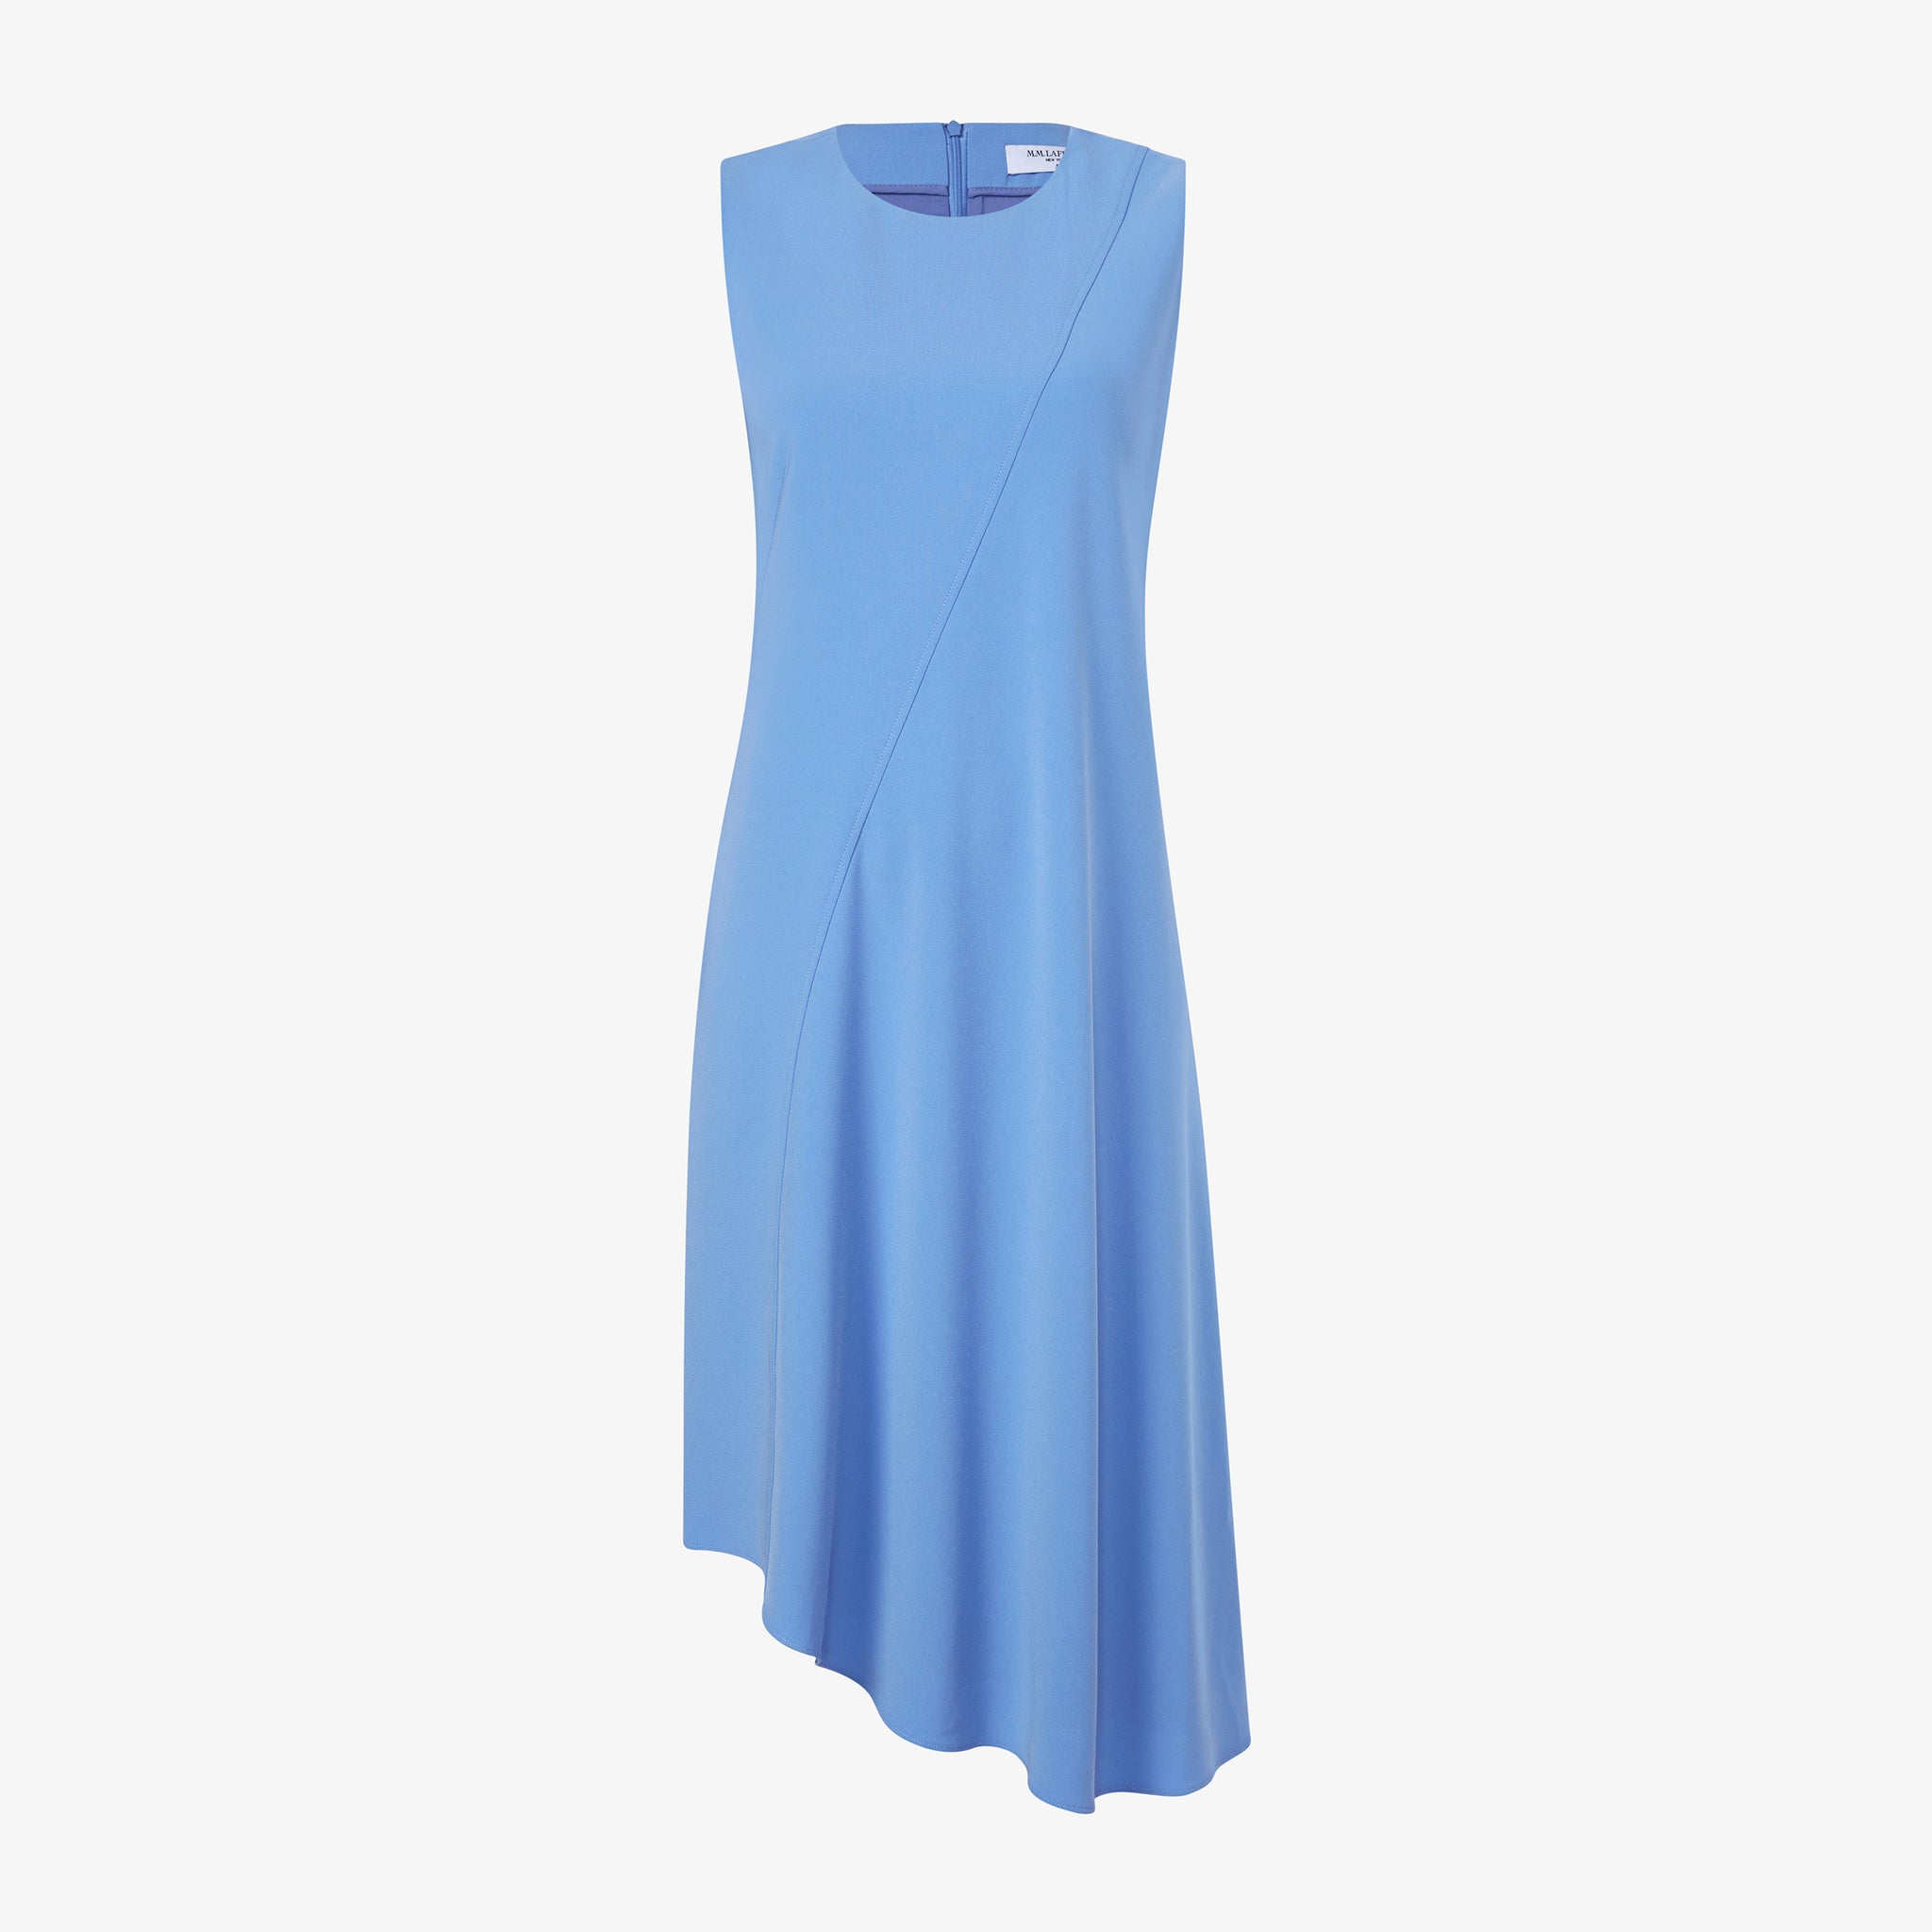 Packshot image of the Lara Dress - Eco Heavy Crepe in Carolina Blue